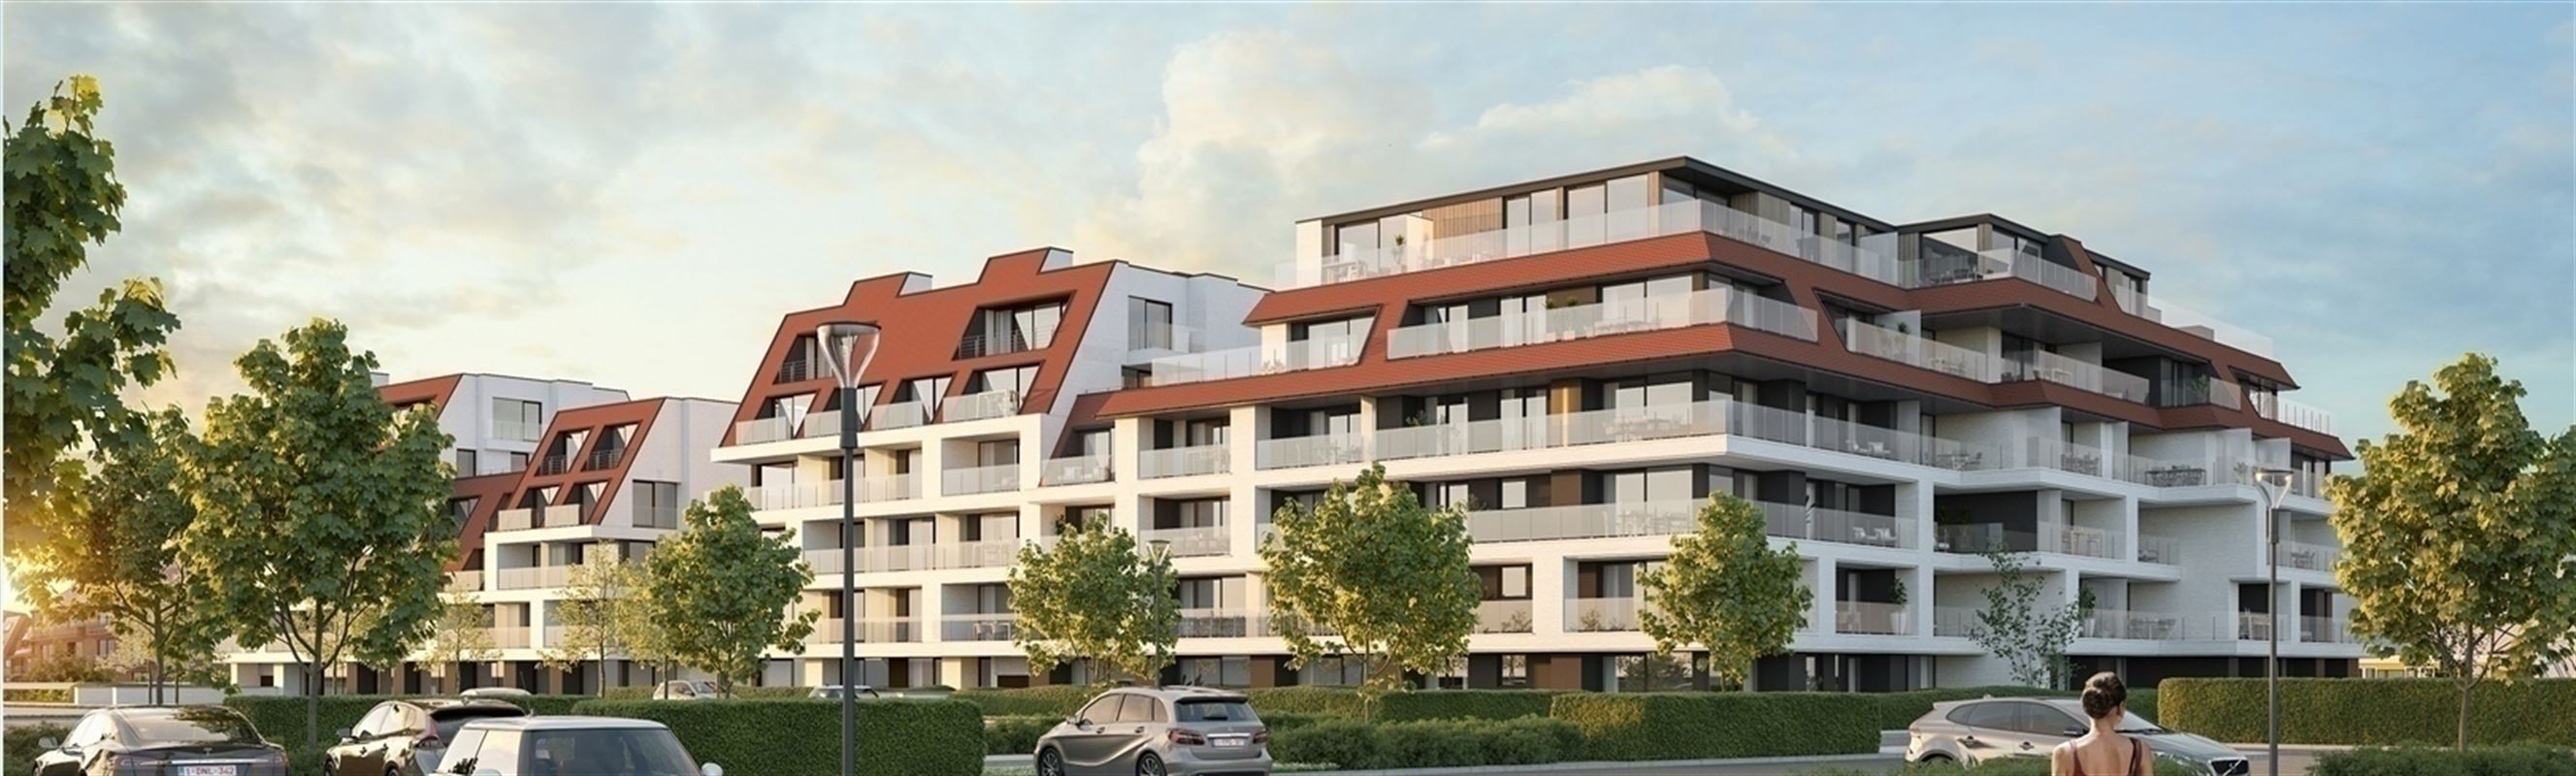 Nieuwbouw : Residentie Jan Turpin FASE 5 te NIEUWPOORT (8620) - Prijs 